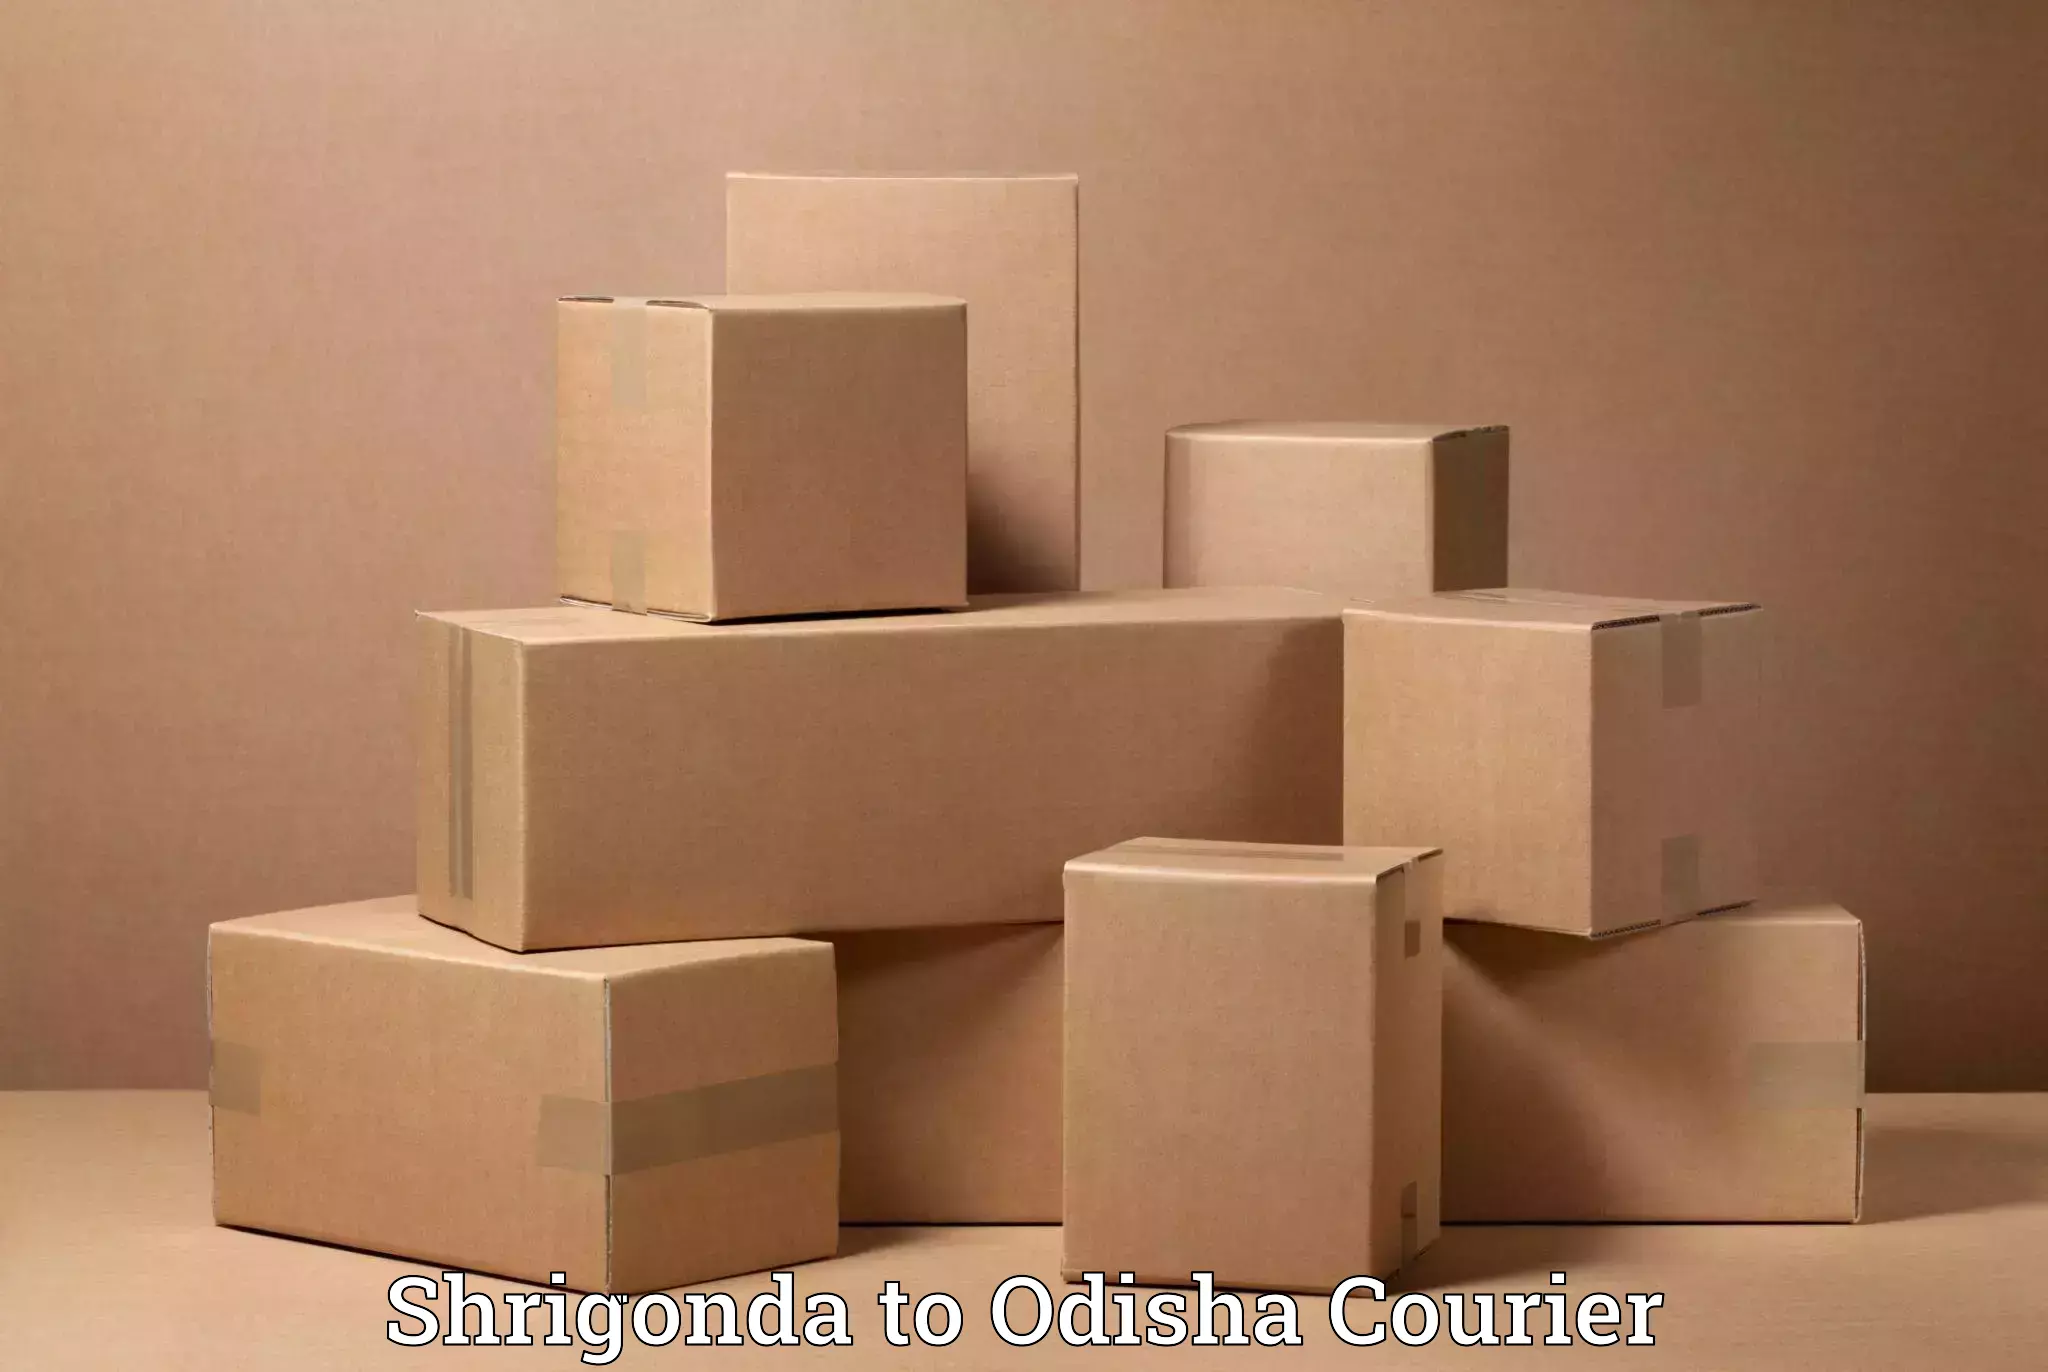 Furniture delivery service Shrigonda to Raighar